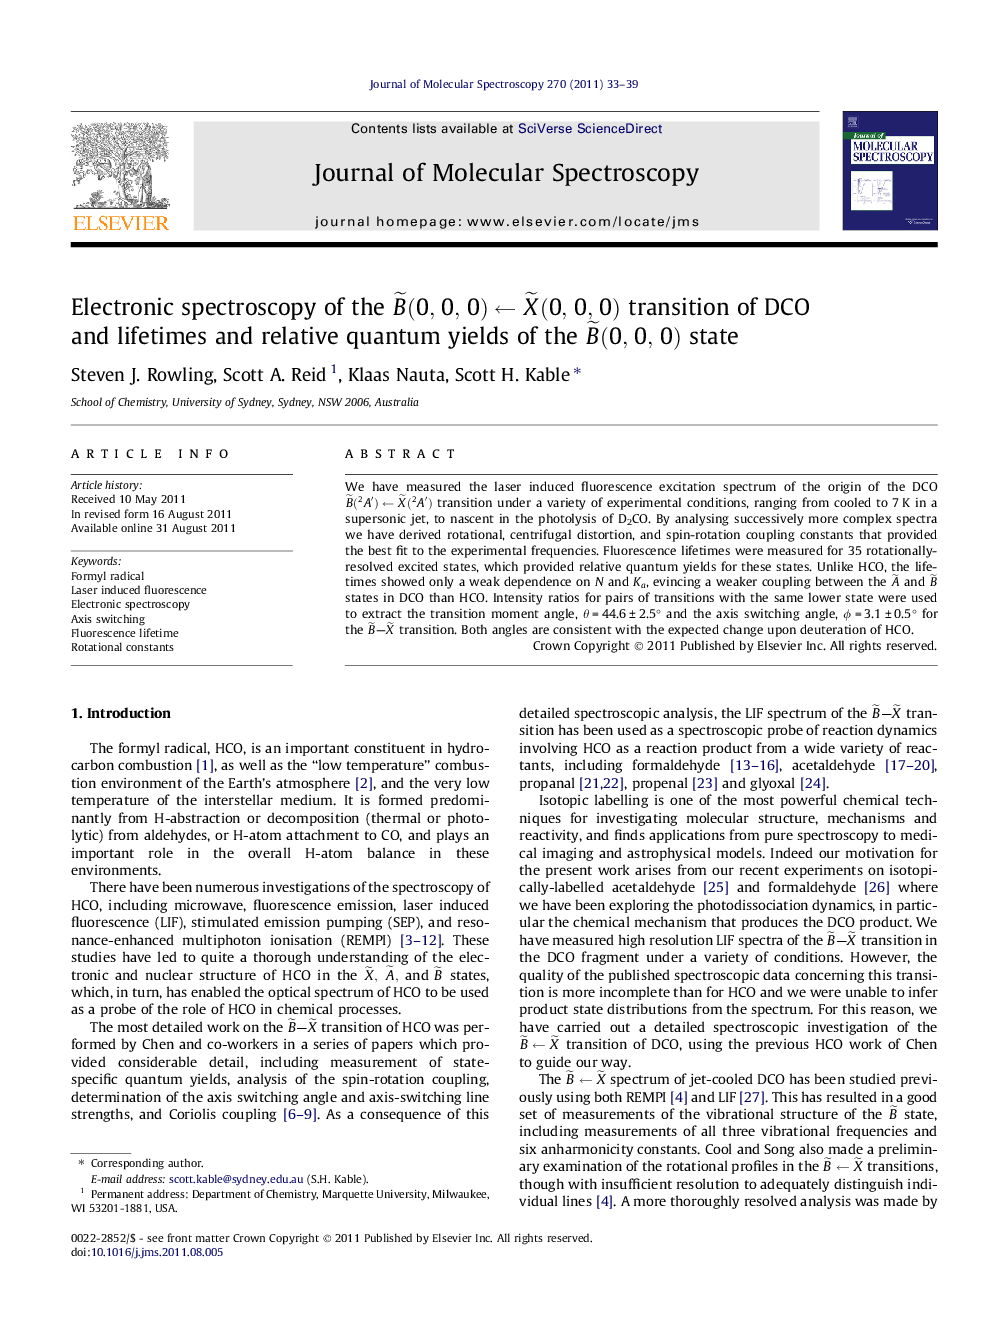 Electronic spectroscopy of the Bâ¼(0,0,0)âXâ¼(0,0,0) transition of DCO and lifetimes and relative quantum yields of the Bâ¼(0,0,0) state